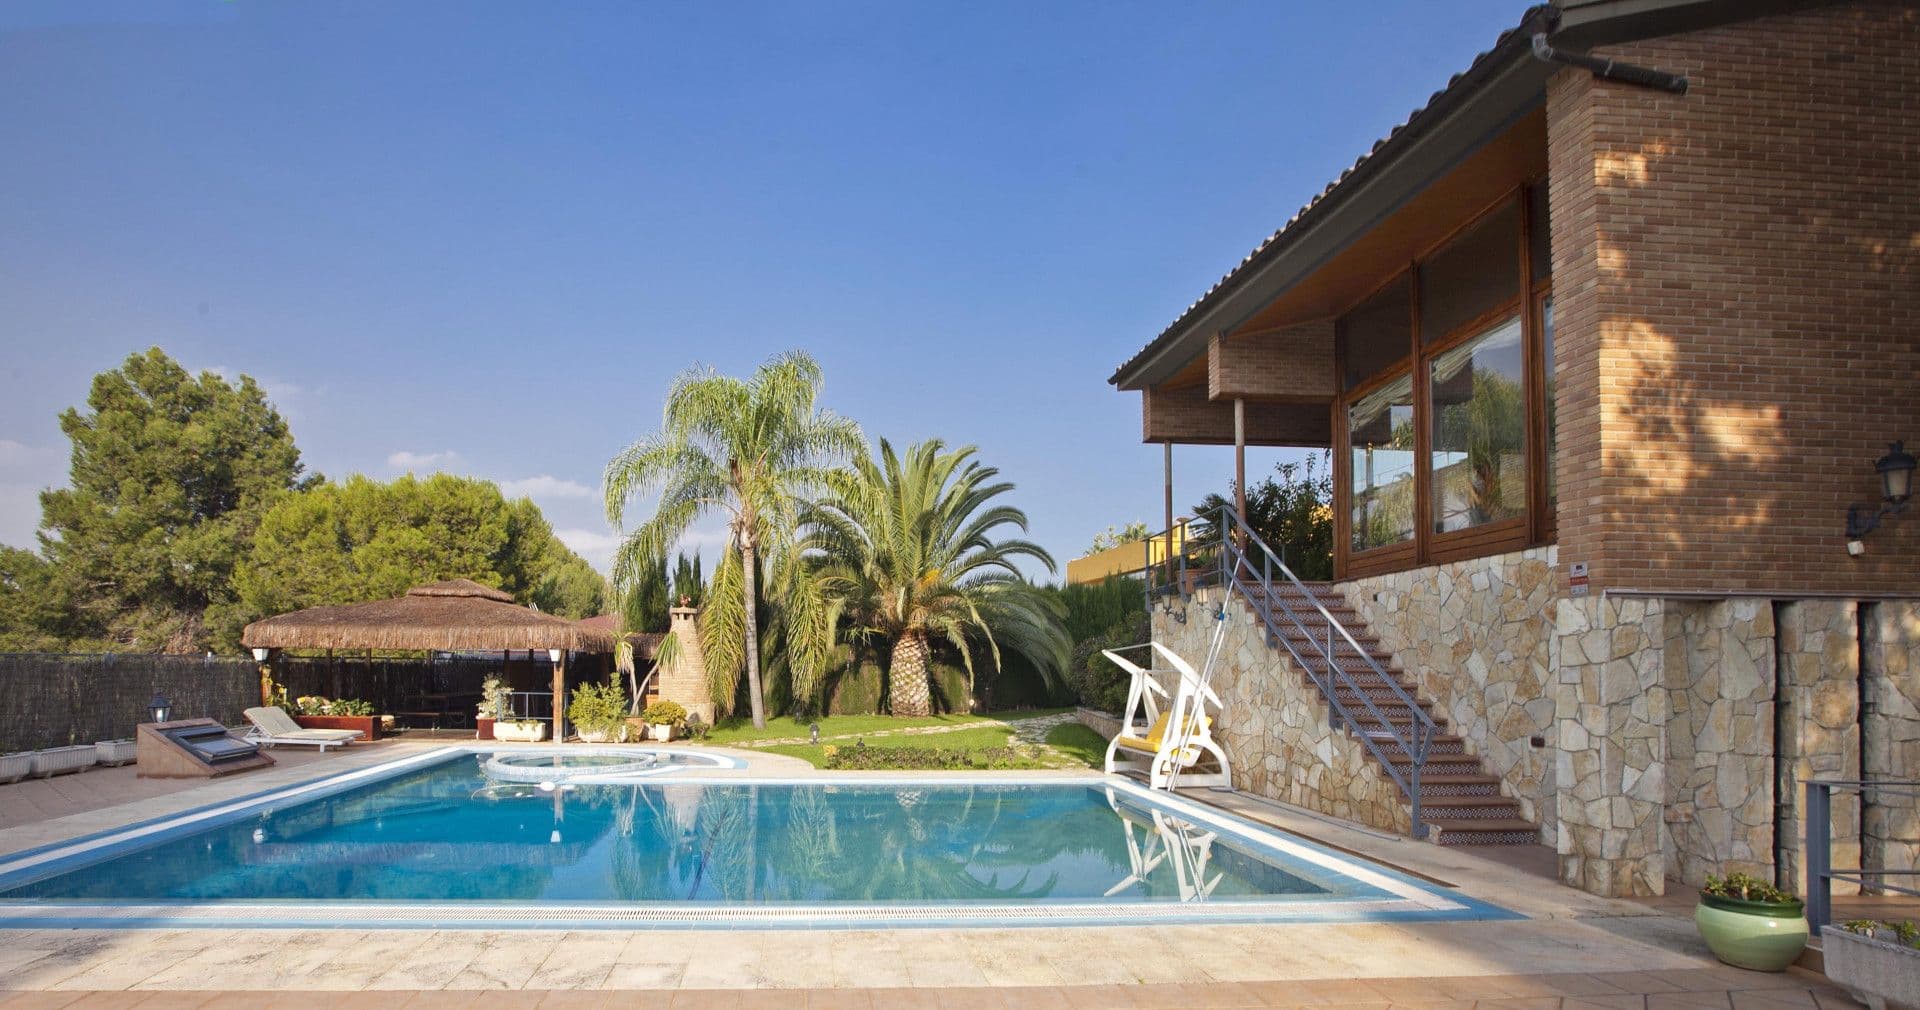 Villa avec piscine et cave à vin dans le quartier résidentiel Santa Apolonia, Valence